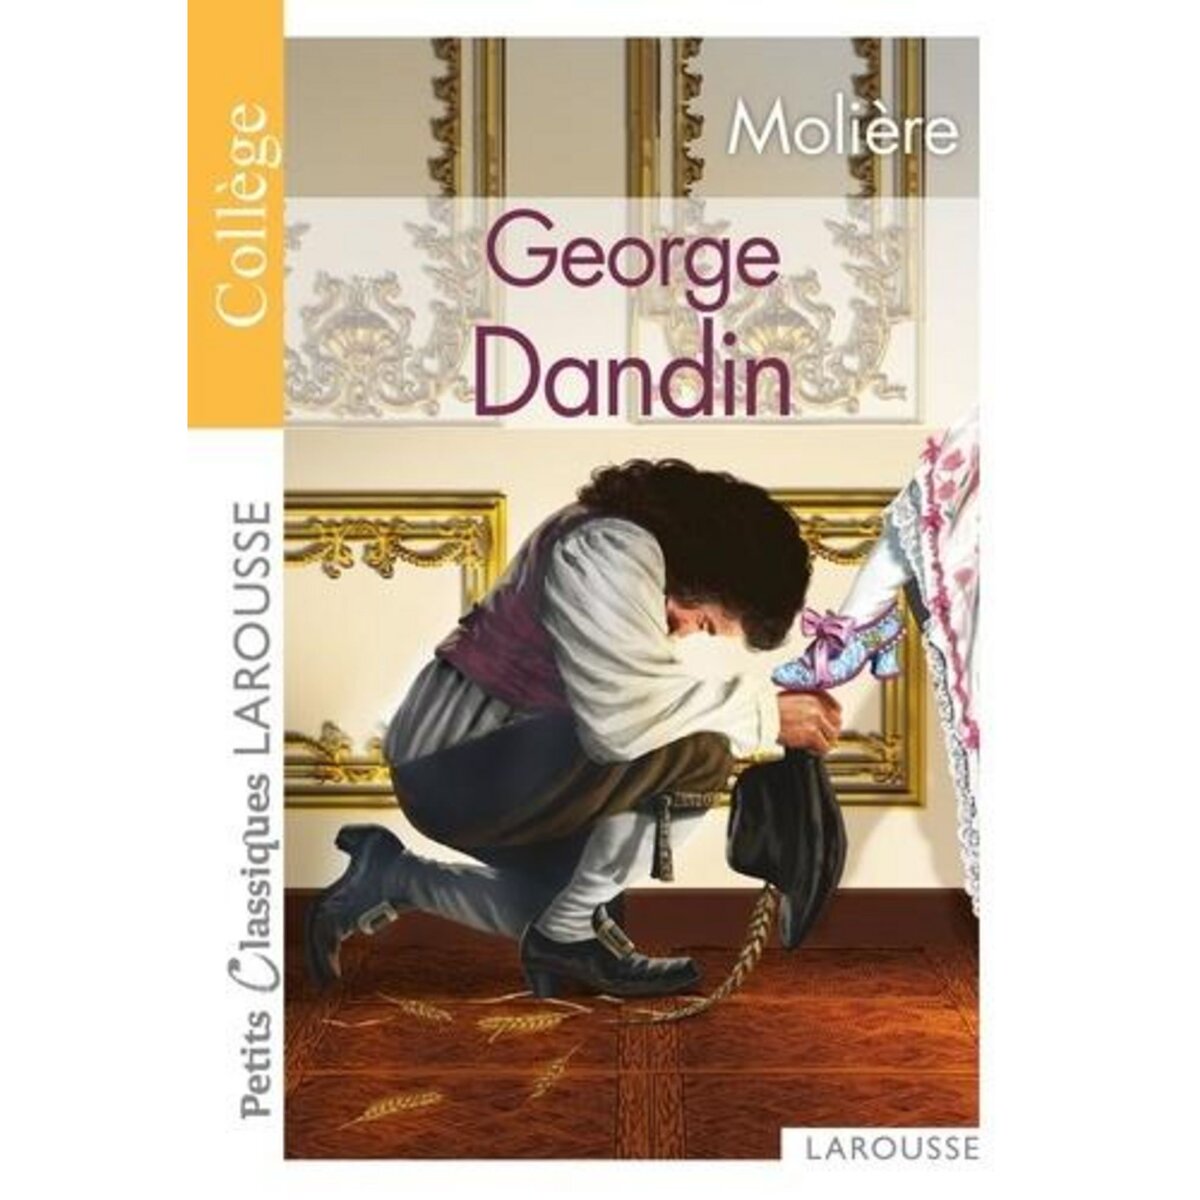  GEORGE DANDIN, Molière